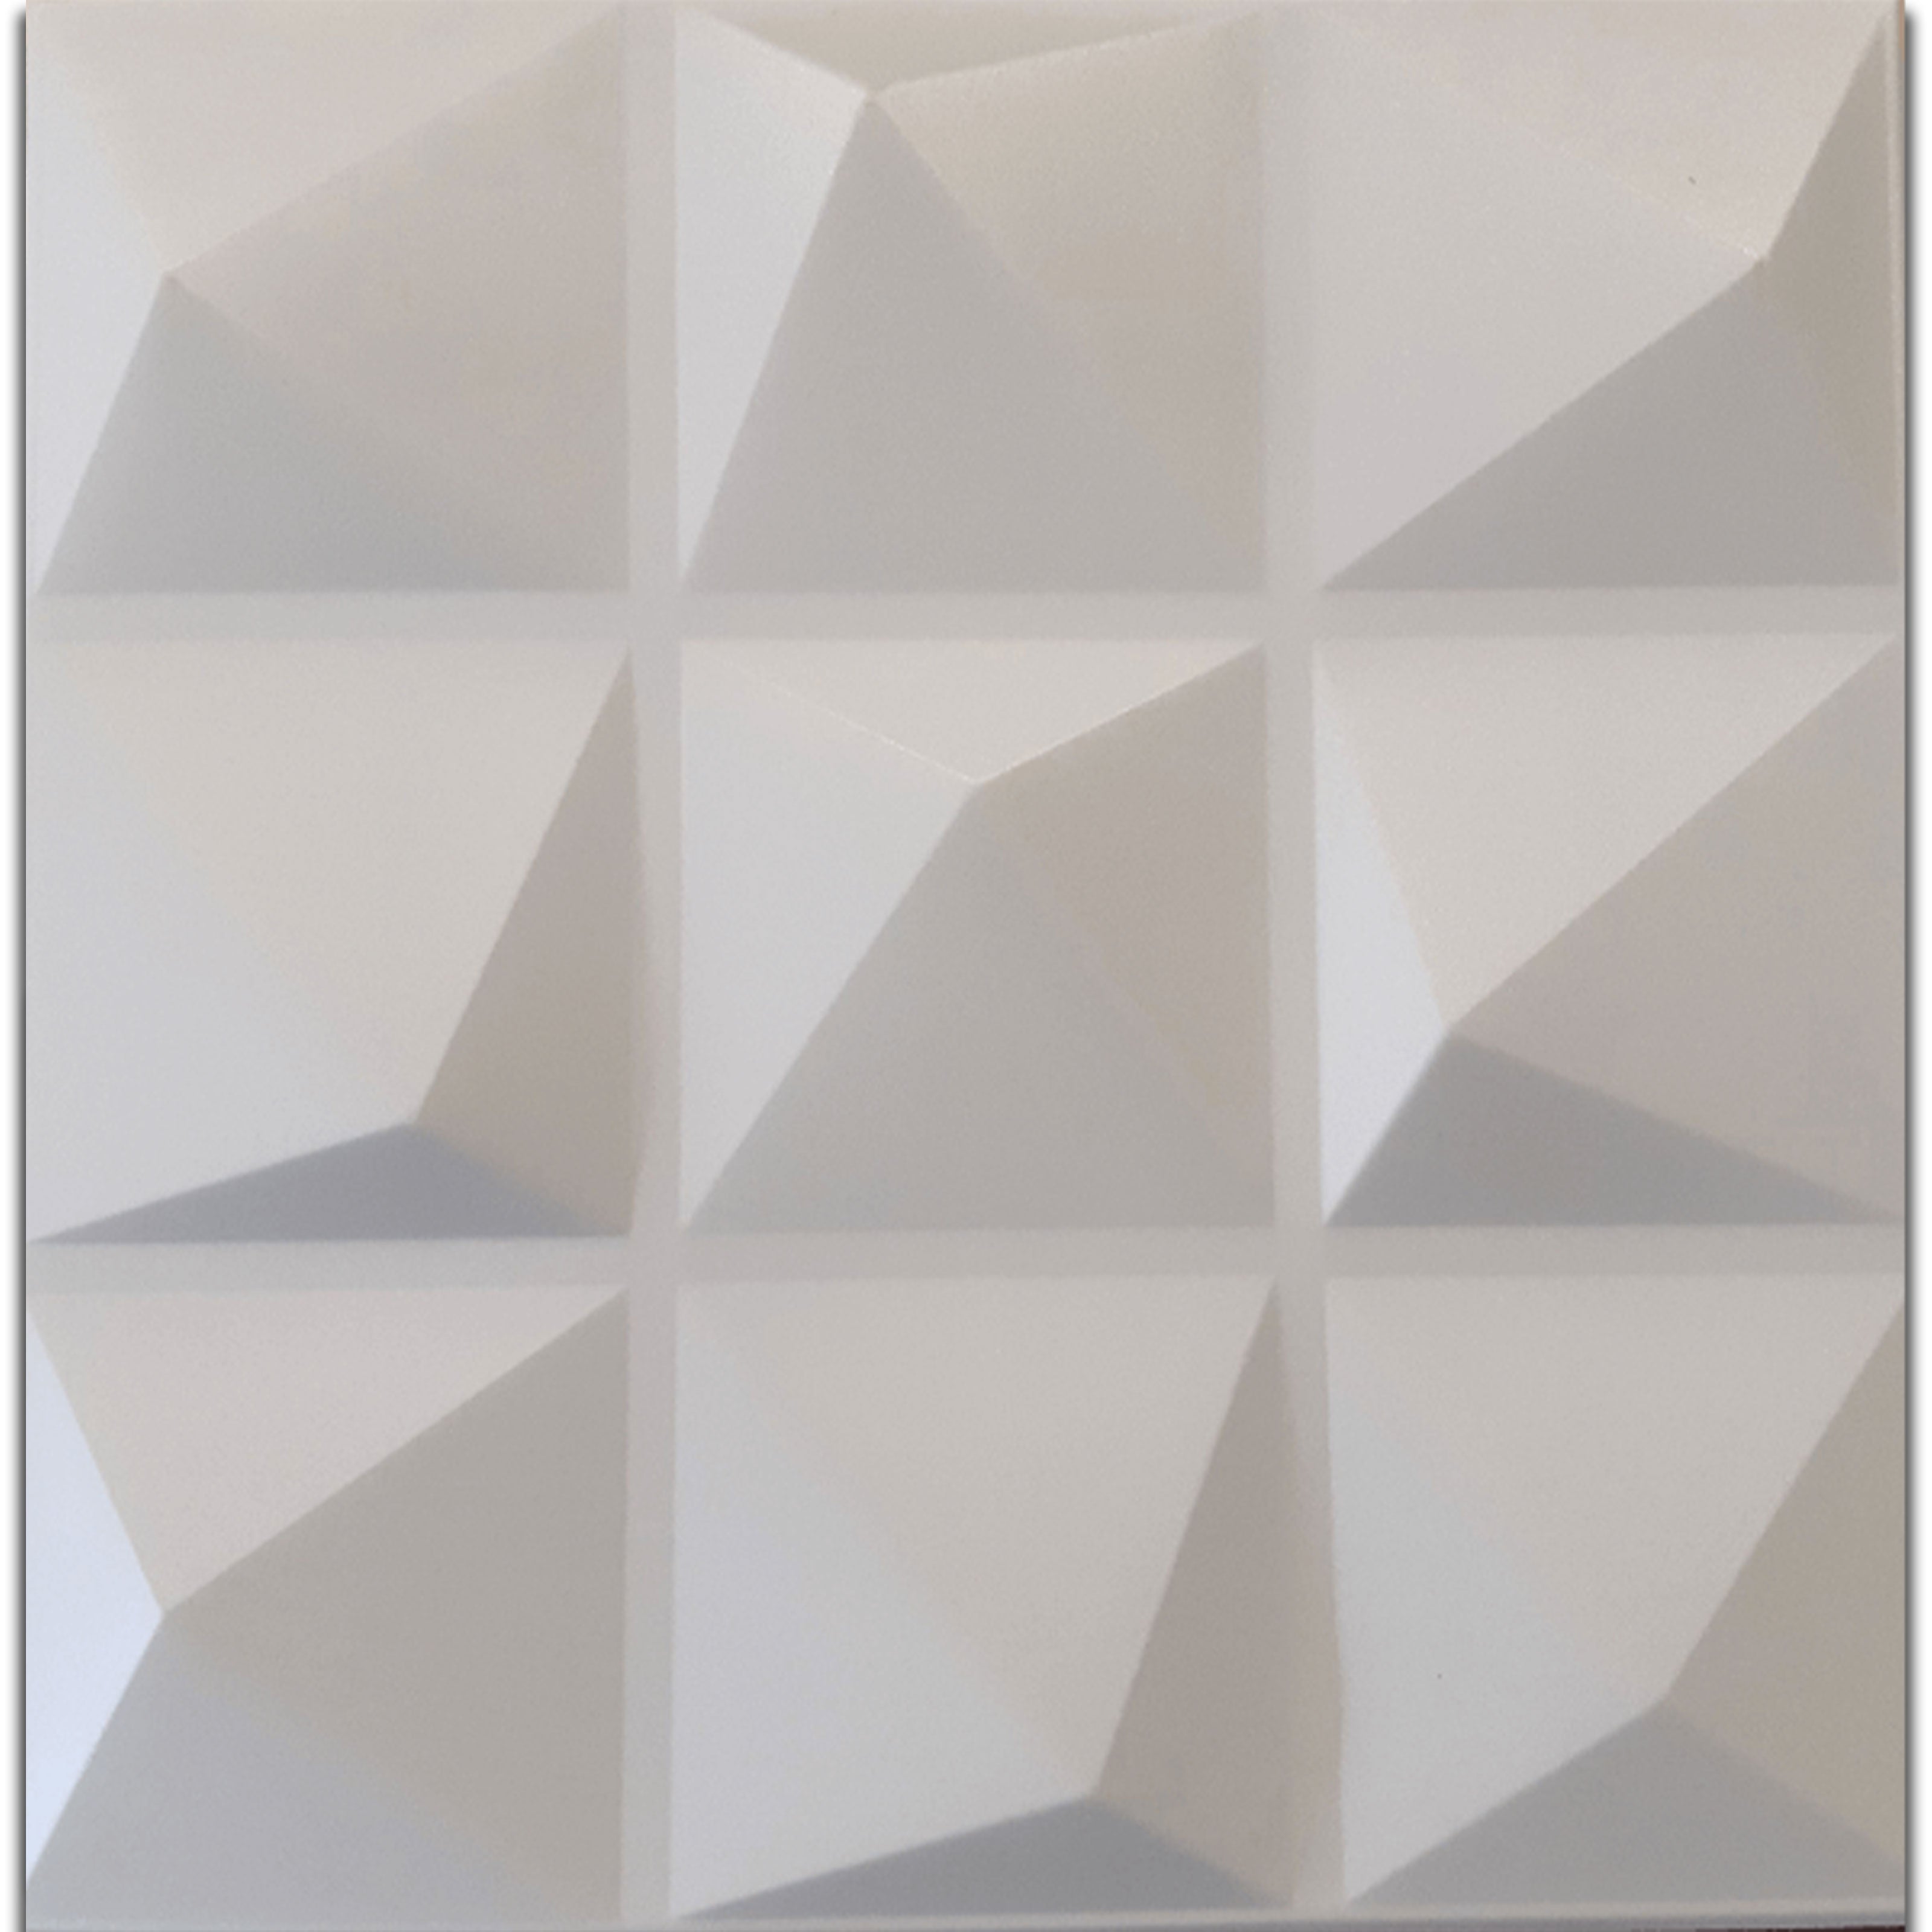 10/20mq di Pannelli in EPS (polistirene compatto) 3D a soffitto o Parete 50x50x2cm Bianchi 4 modelli - 10mq di Piramidi